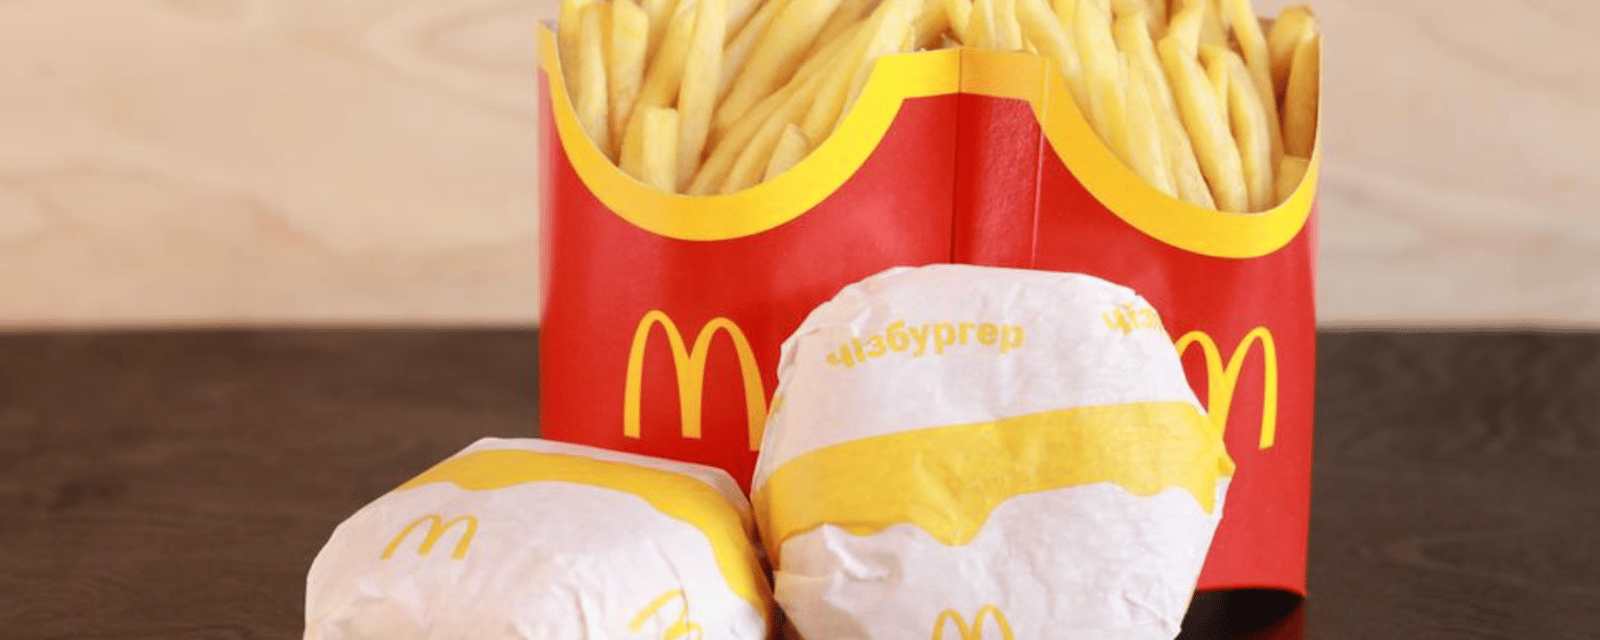 Les frites de McDonald's ne sont pas que des pommes de terre. Voici tout ce qu'elles contiennent.